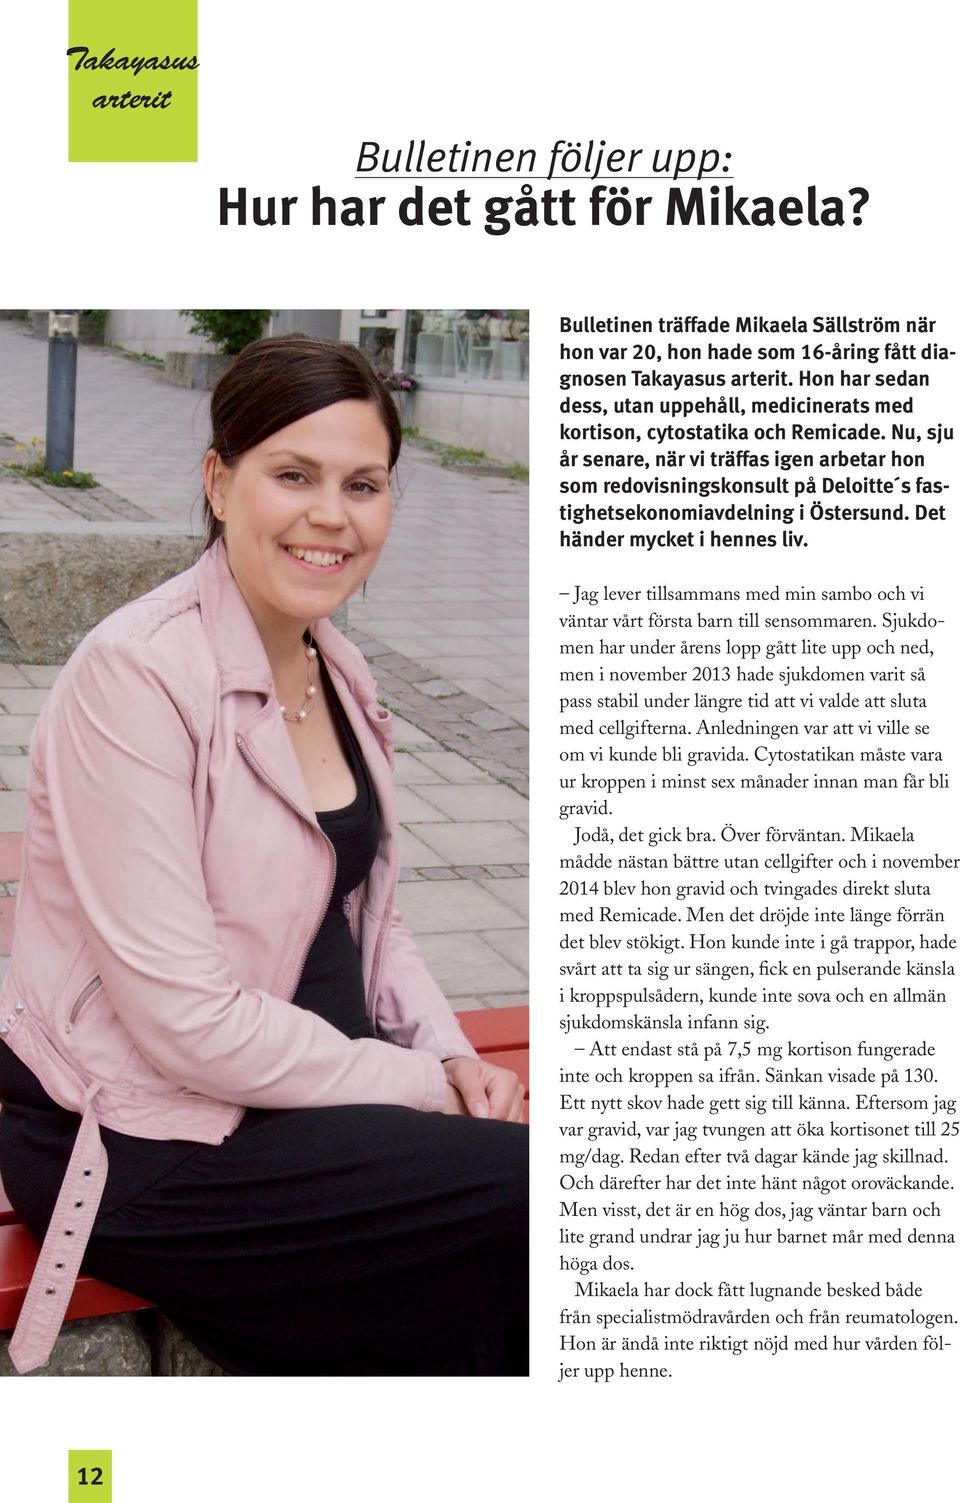 Nu, sju år senare, när vi träffas igen arbetar hon som redovisningskonsult på Deloitte s fastighetsekonomiavdelning i Östersund. Det händer mycket i hennes liv.